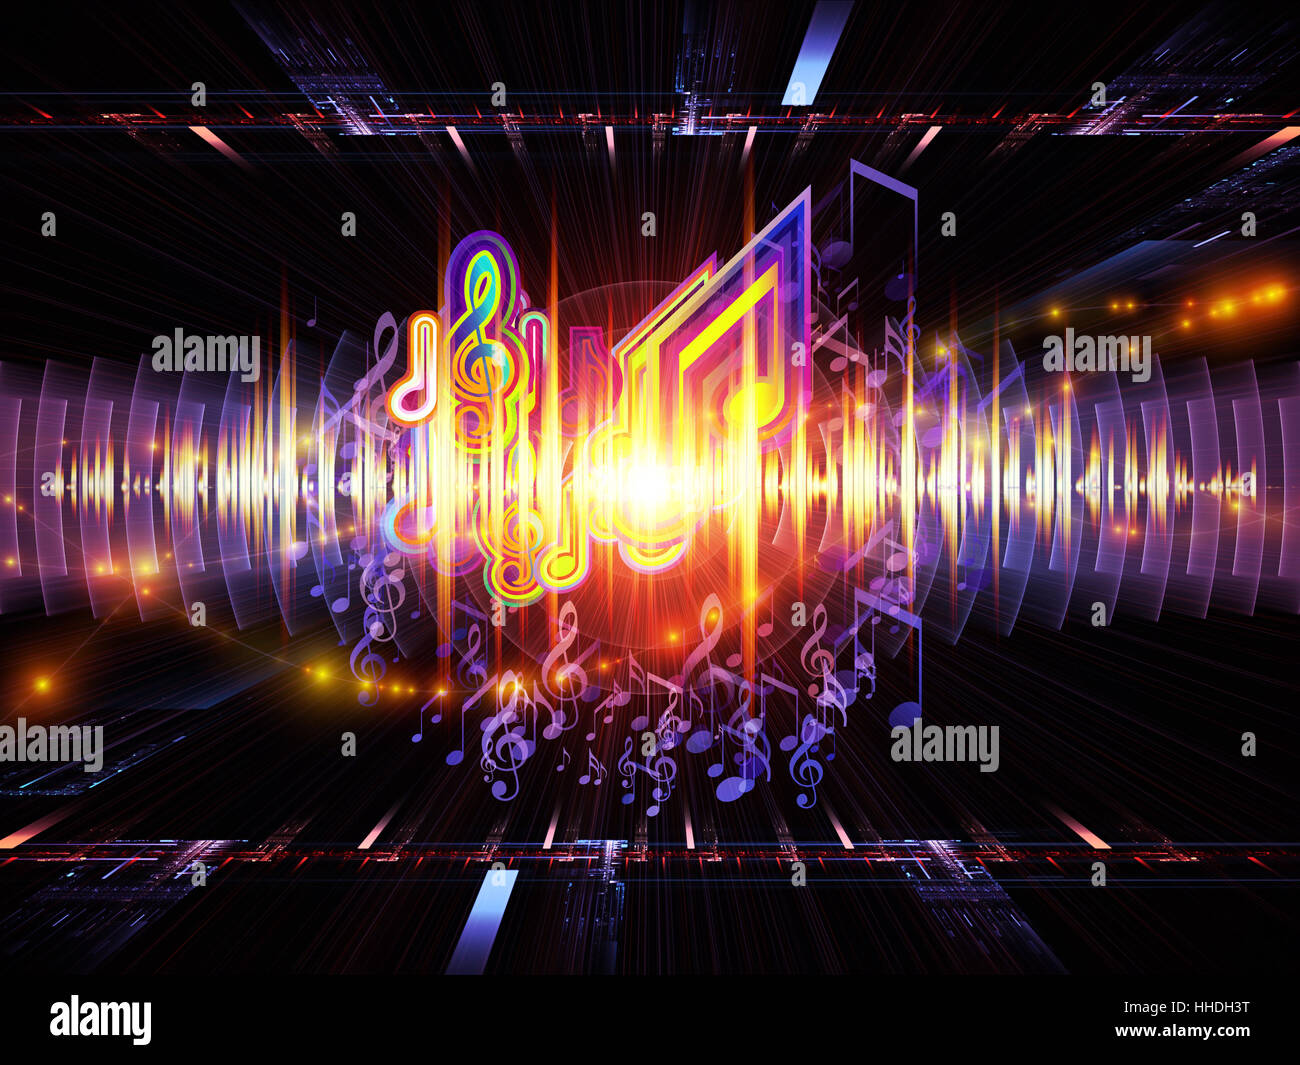 Diseño de fondo de notas musicales, perspectiva fractal, luces, rejillas de  la onda sinusoidal y patrones en el tema de la música, equipos de sonido y  procesamiento, el rendimiento de audio y